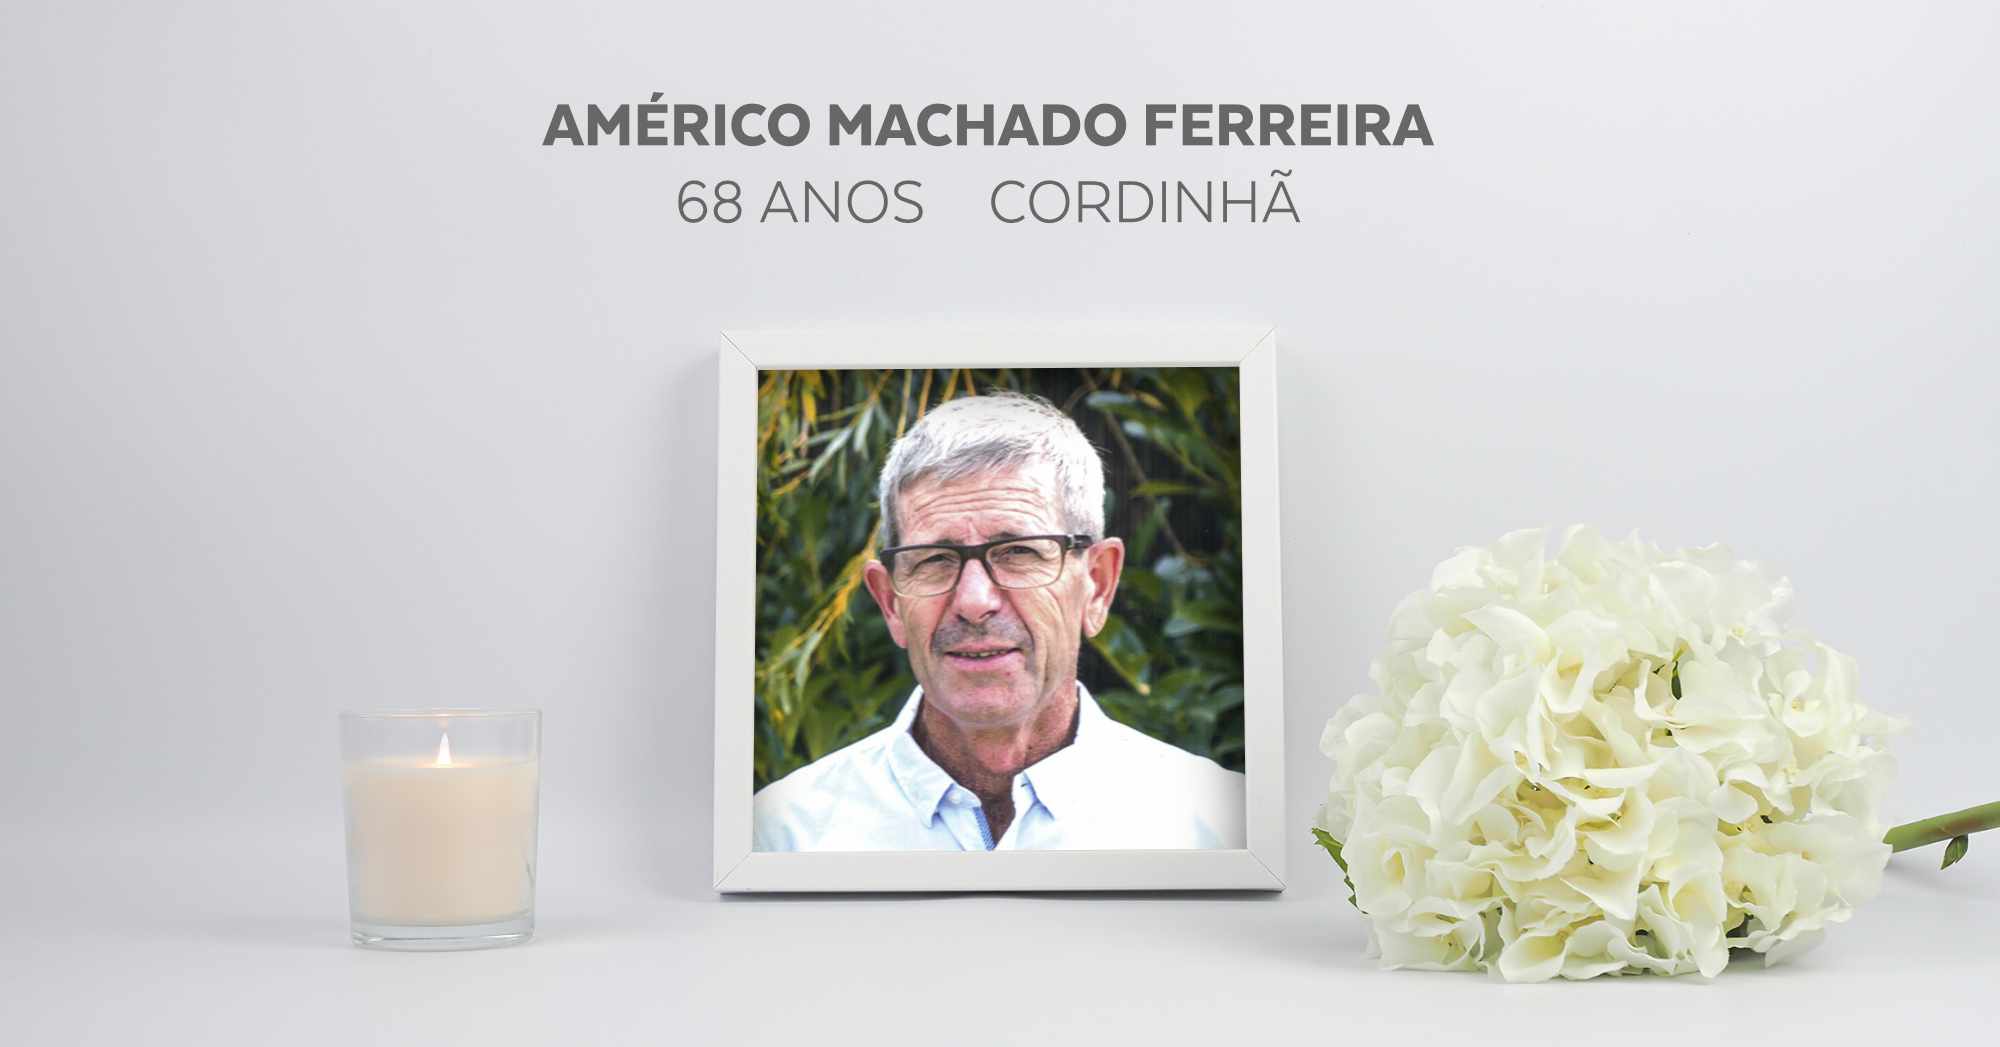 Américo Machado Ferreira